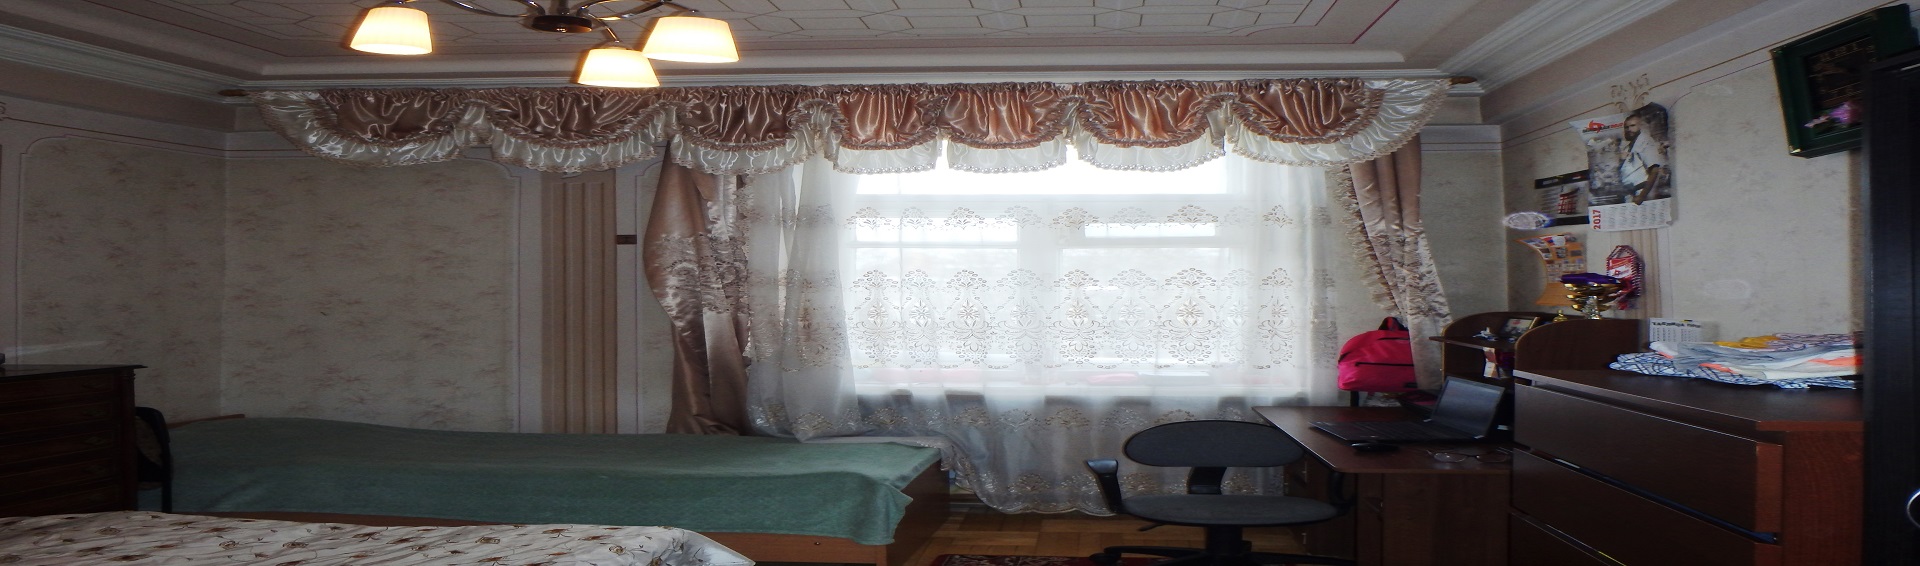 Просторная 2-х комнатная квартира на ул. Мещерякова 